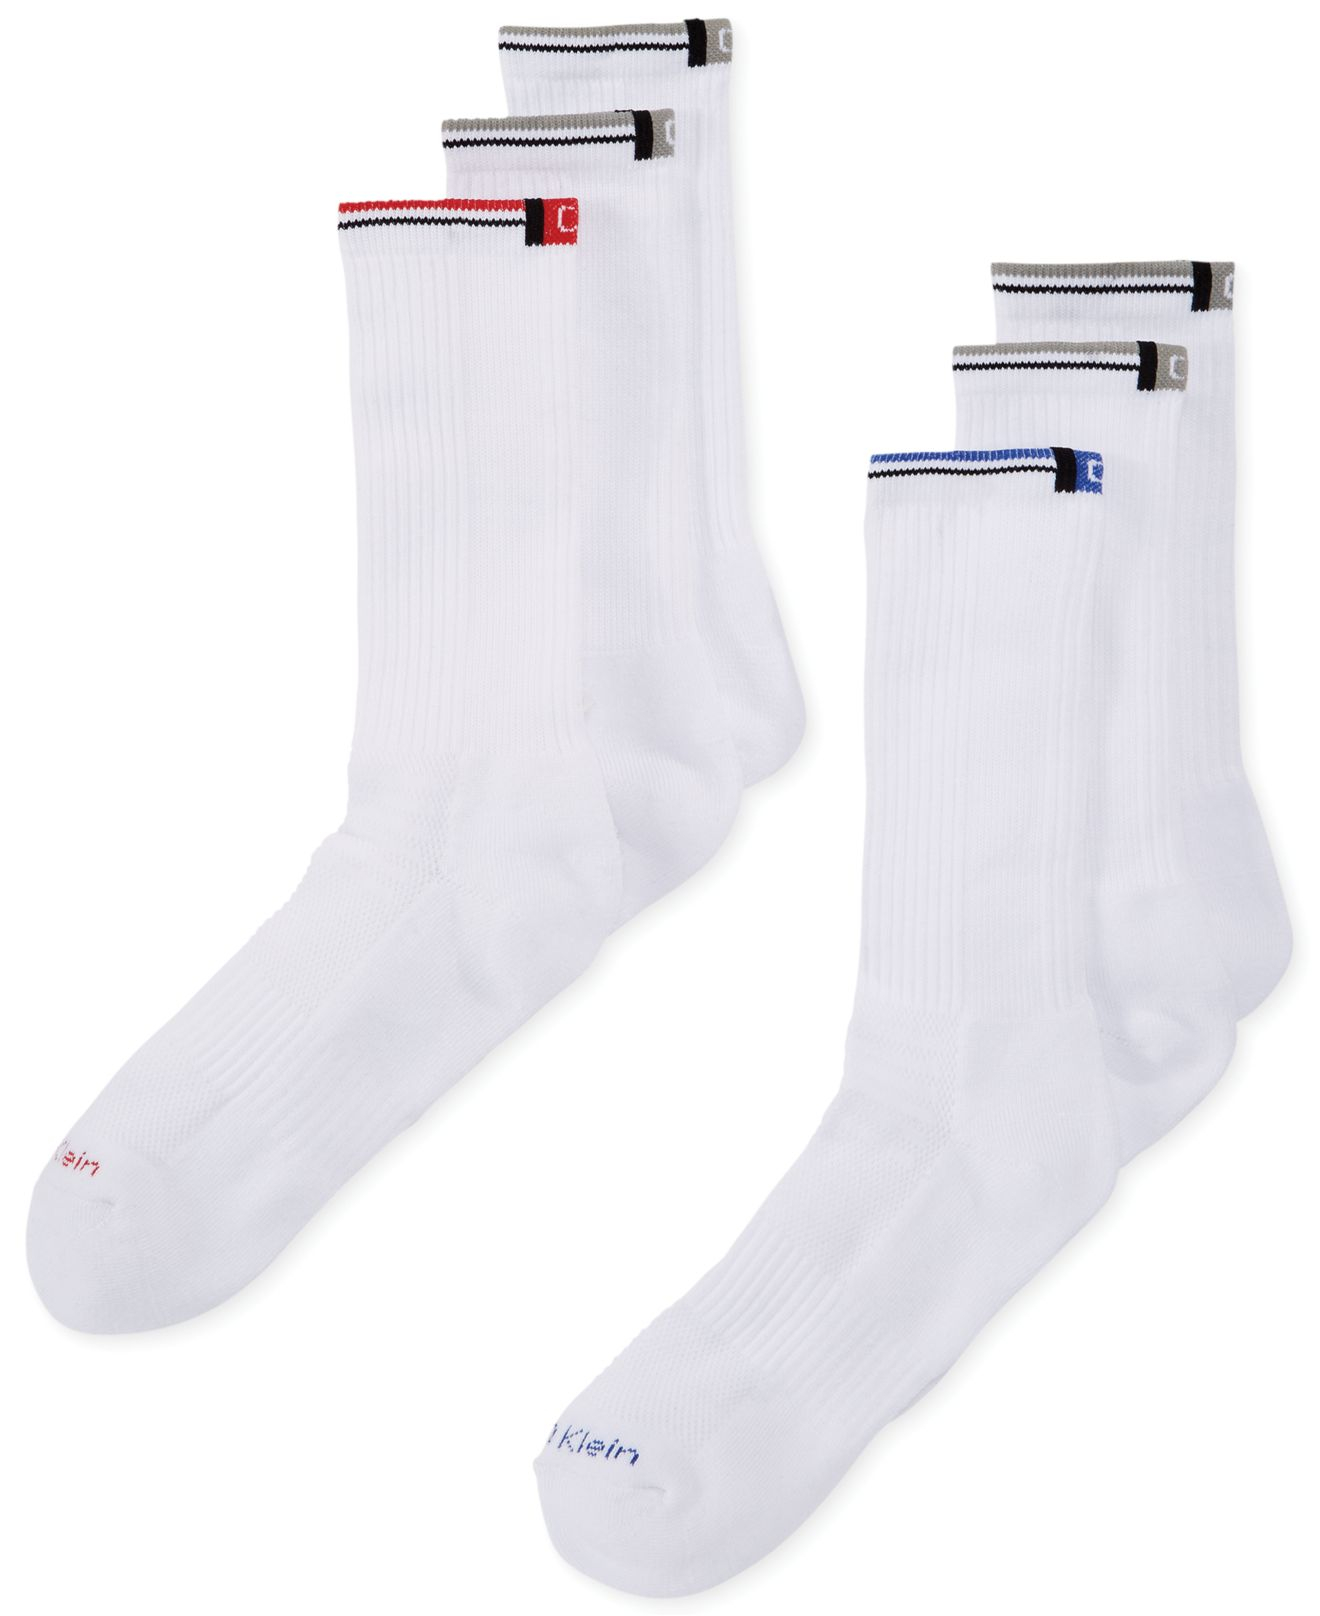 Lyst - Calvin Klein Mens Sport Crew Socks 6 Pack in White for Men